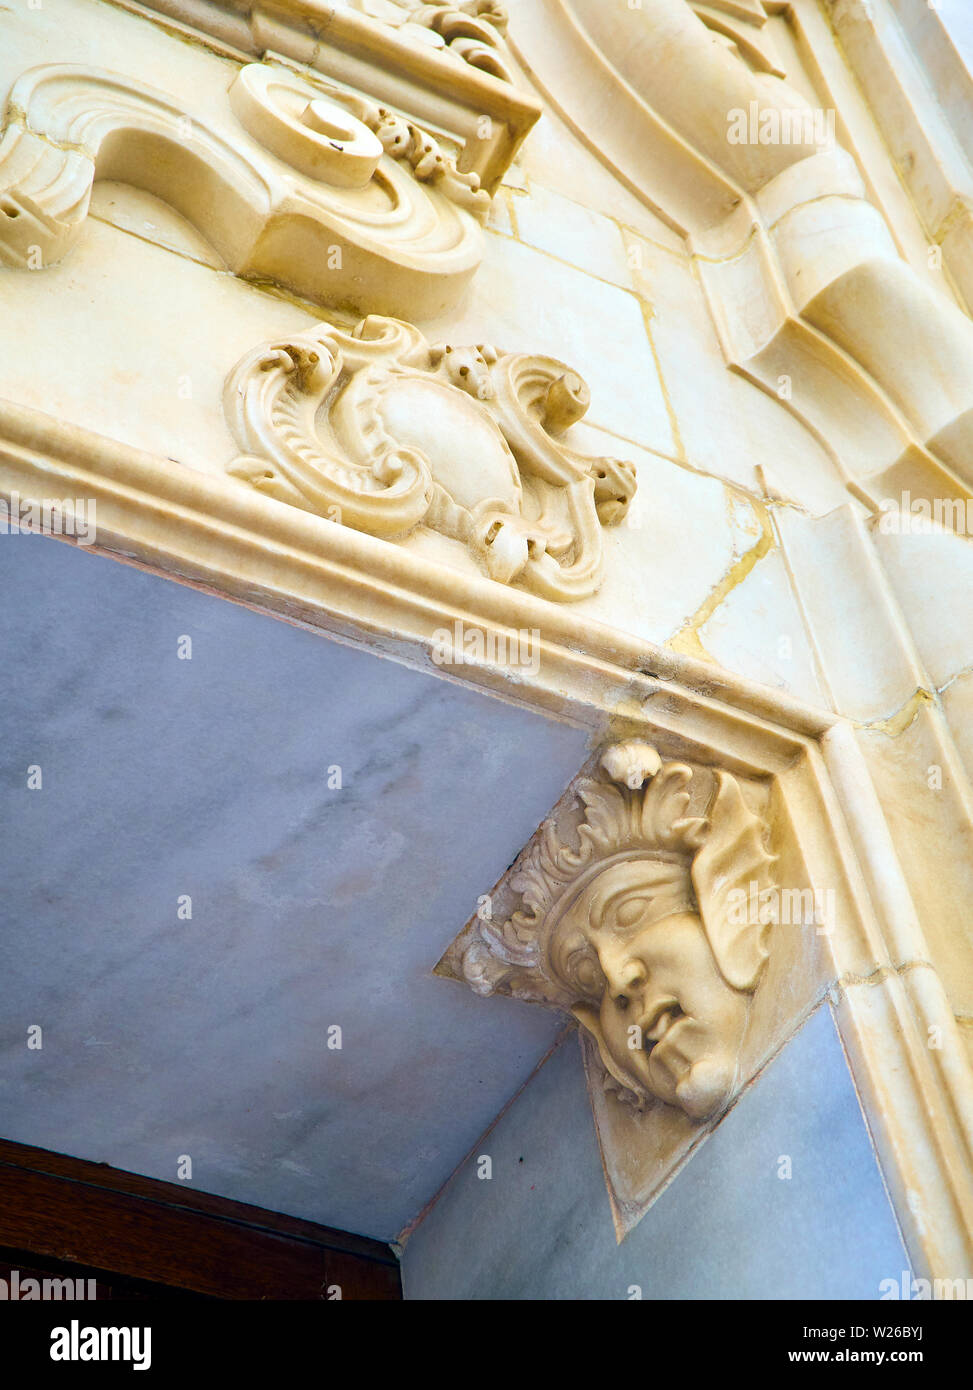 Bassorilievi in una facciata barocca. Lo stile italiano del XVII secolo. Foto Stock